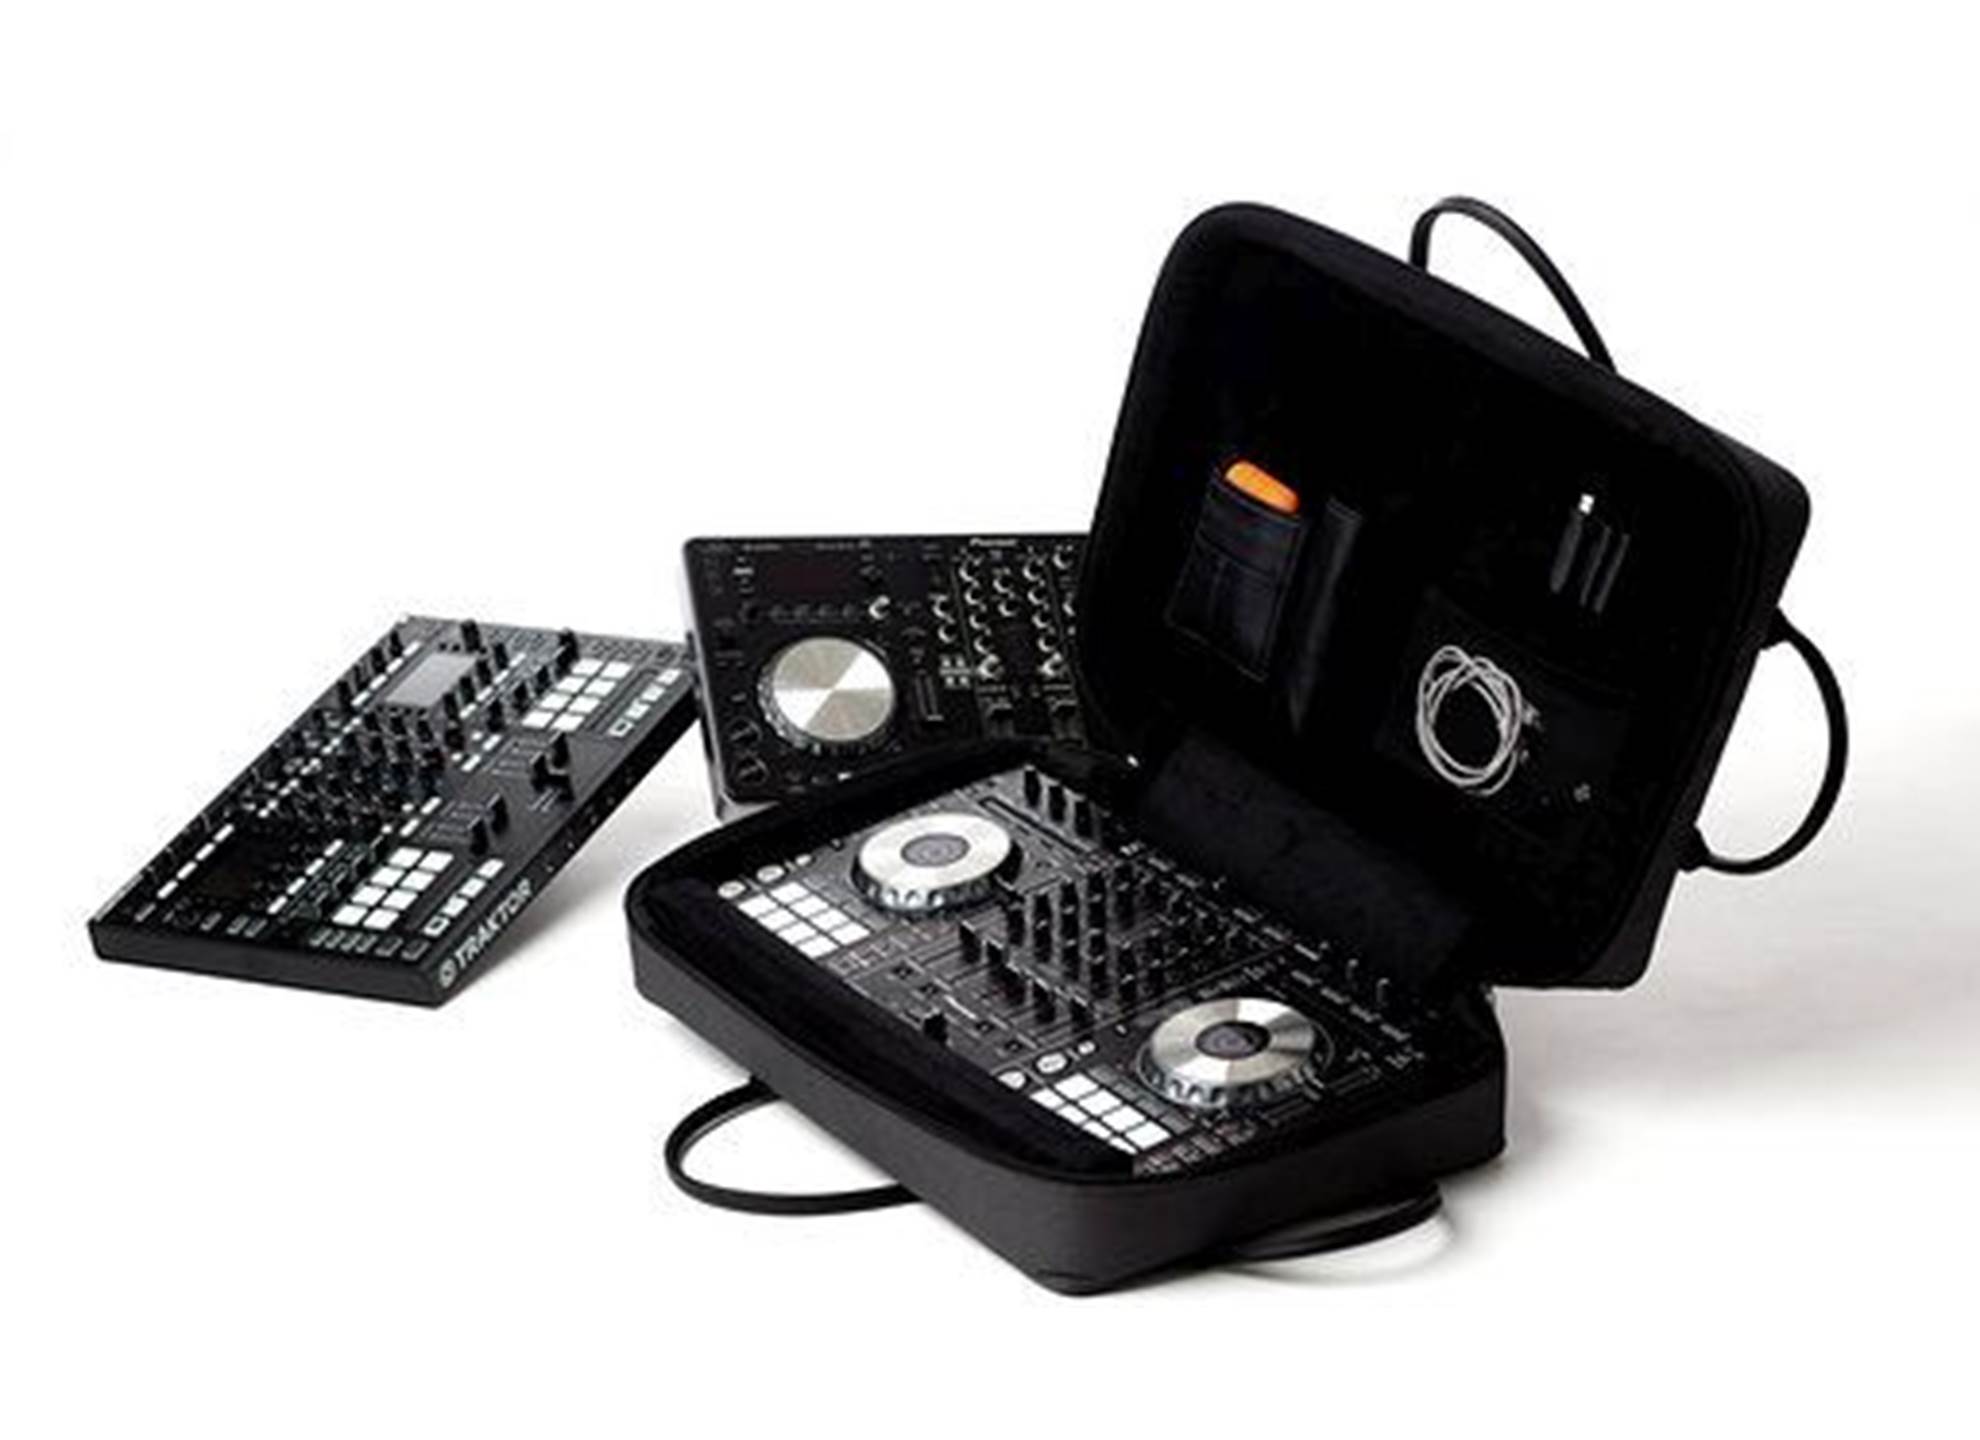 SLB-DJ20 Dj controllers